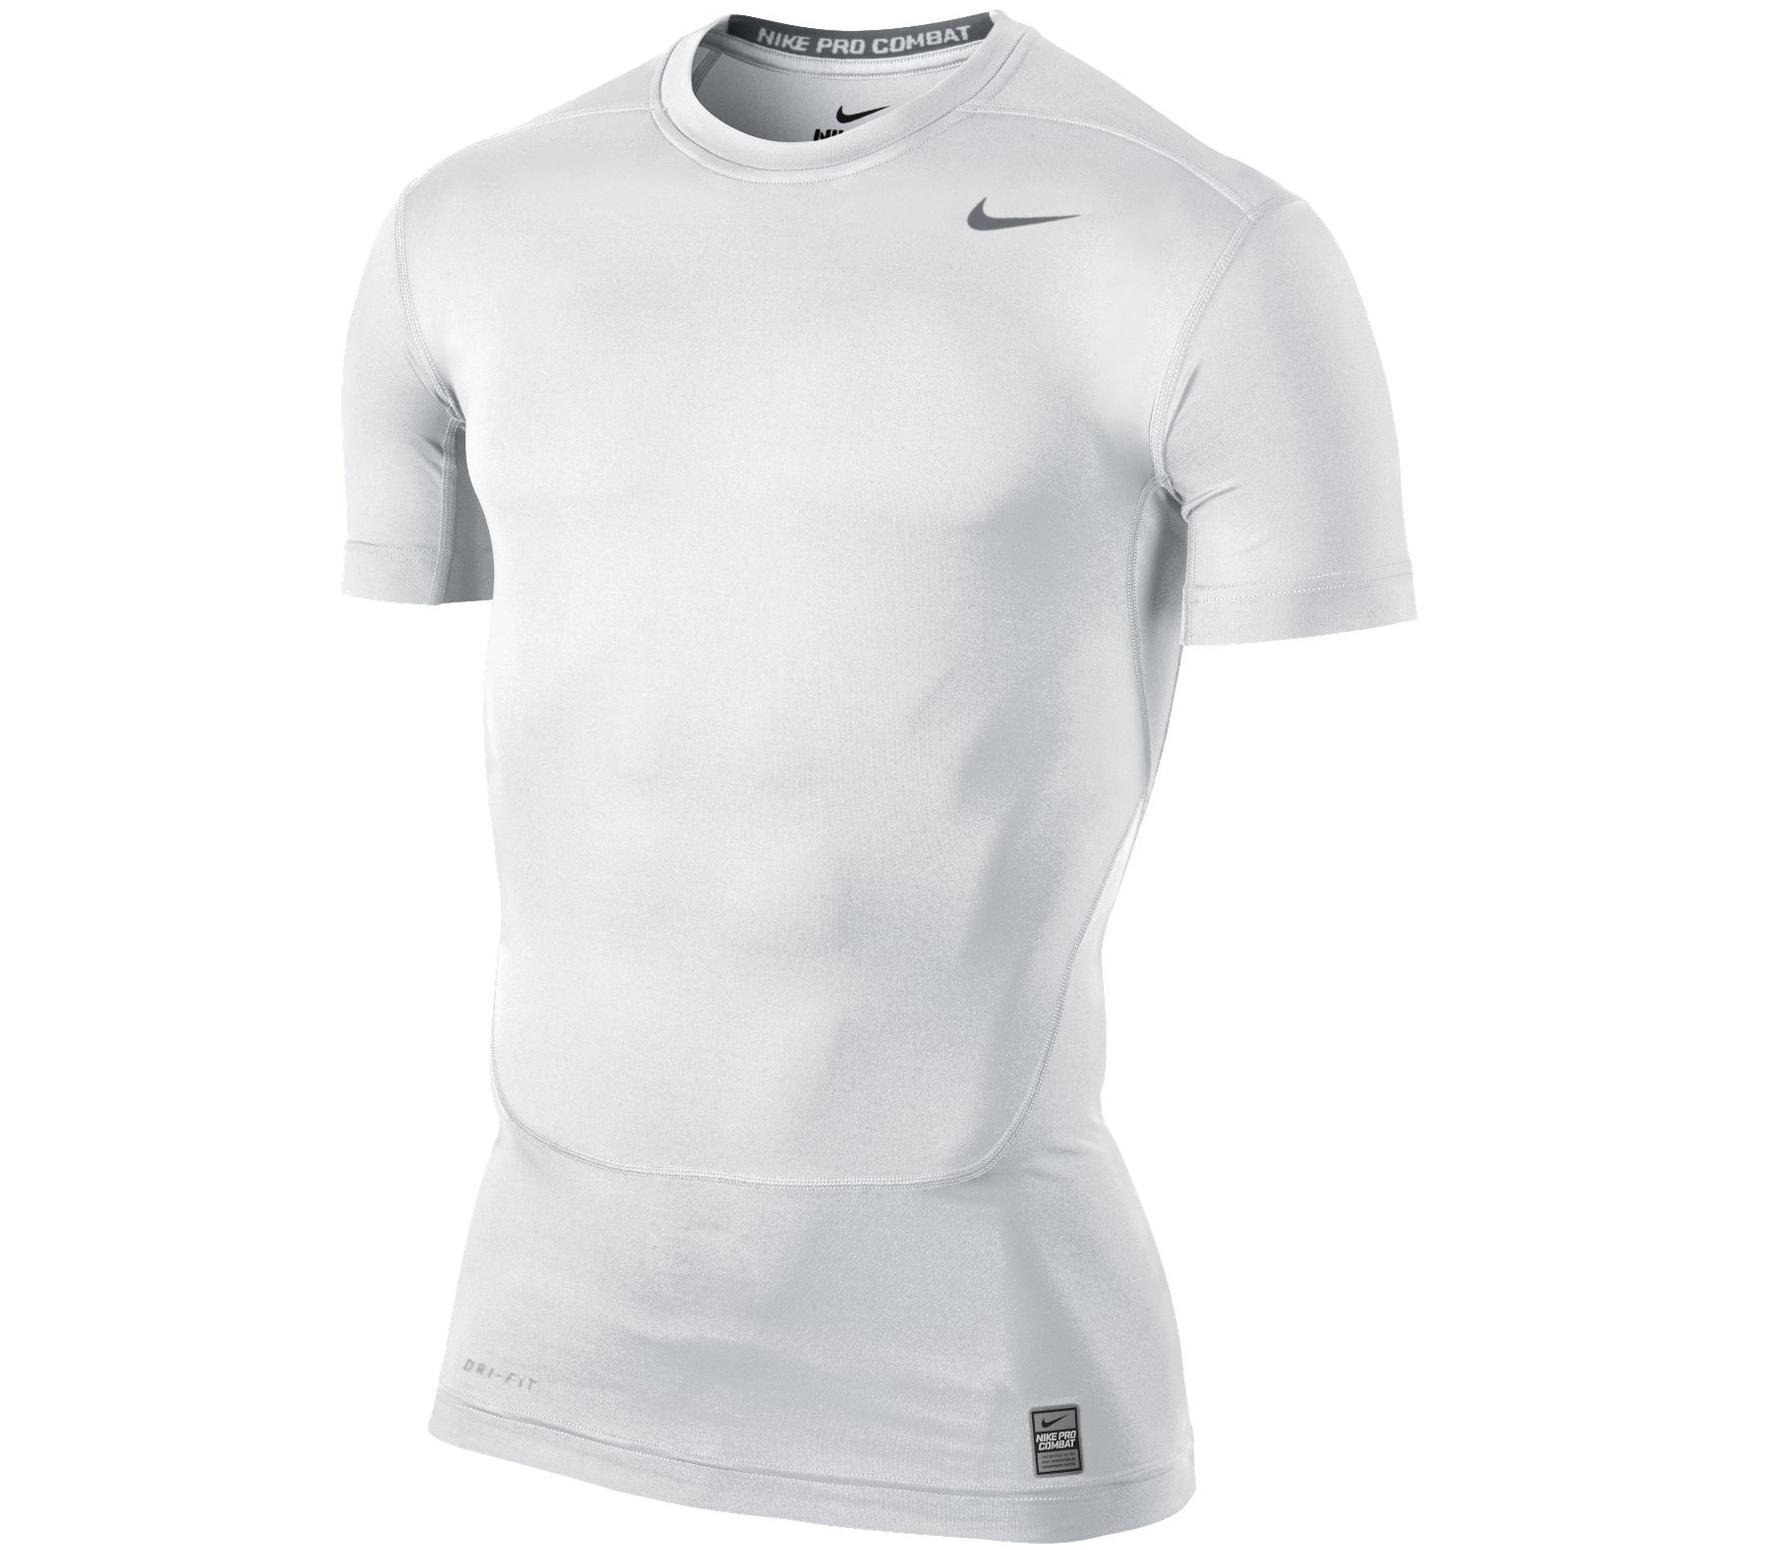 Foto Nike - Camiseta Hombre Core Compression foto 941704